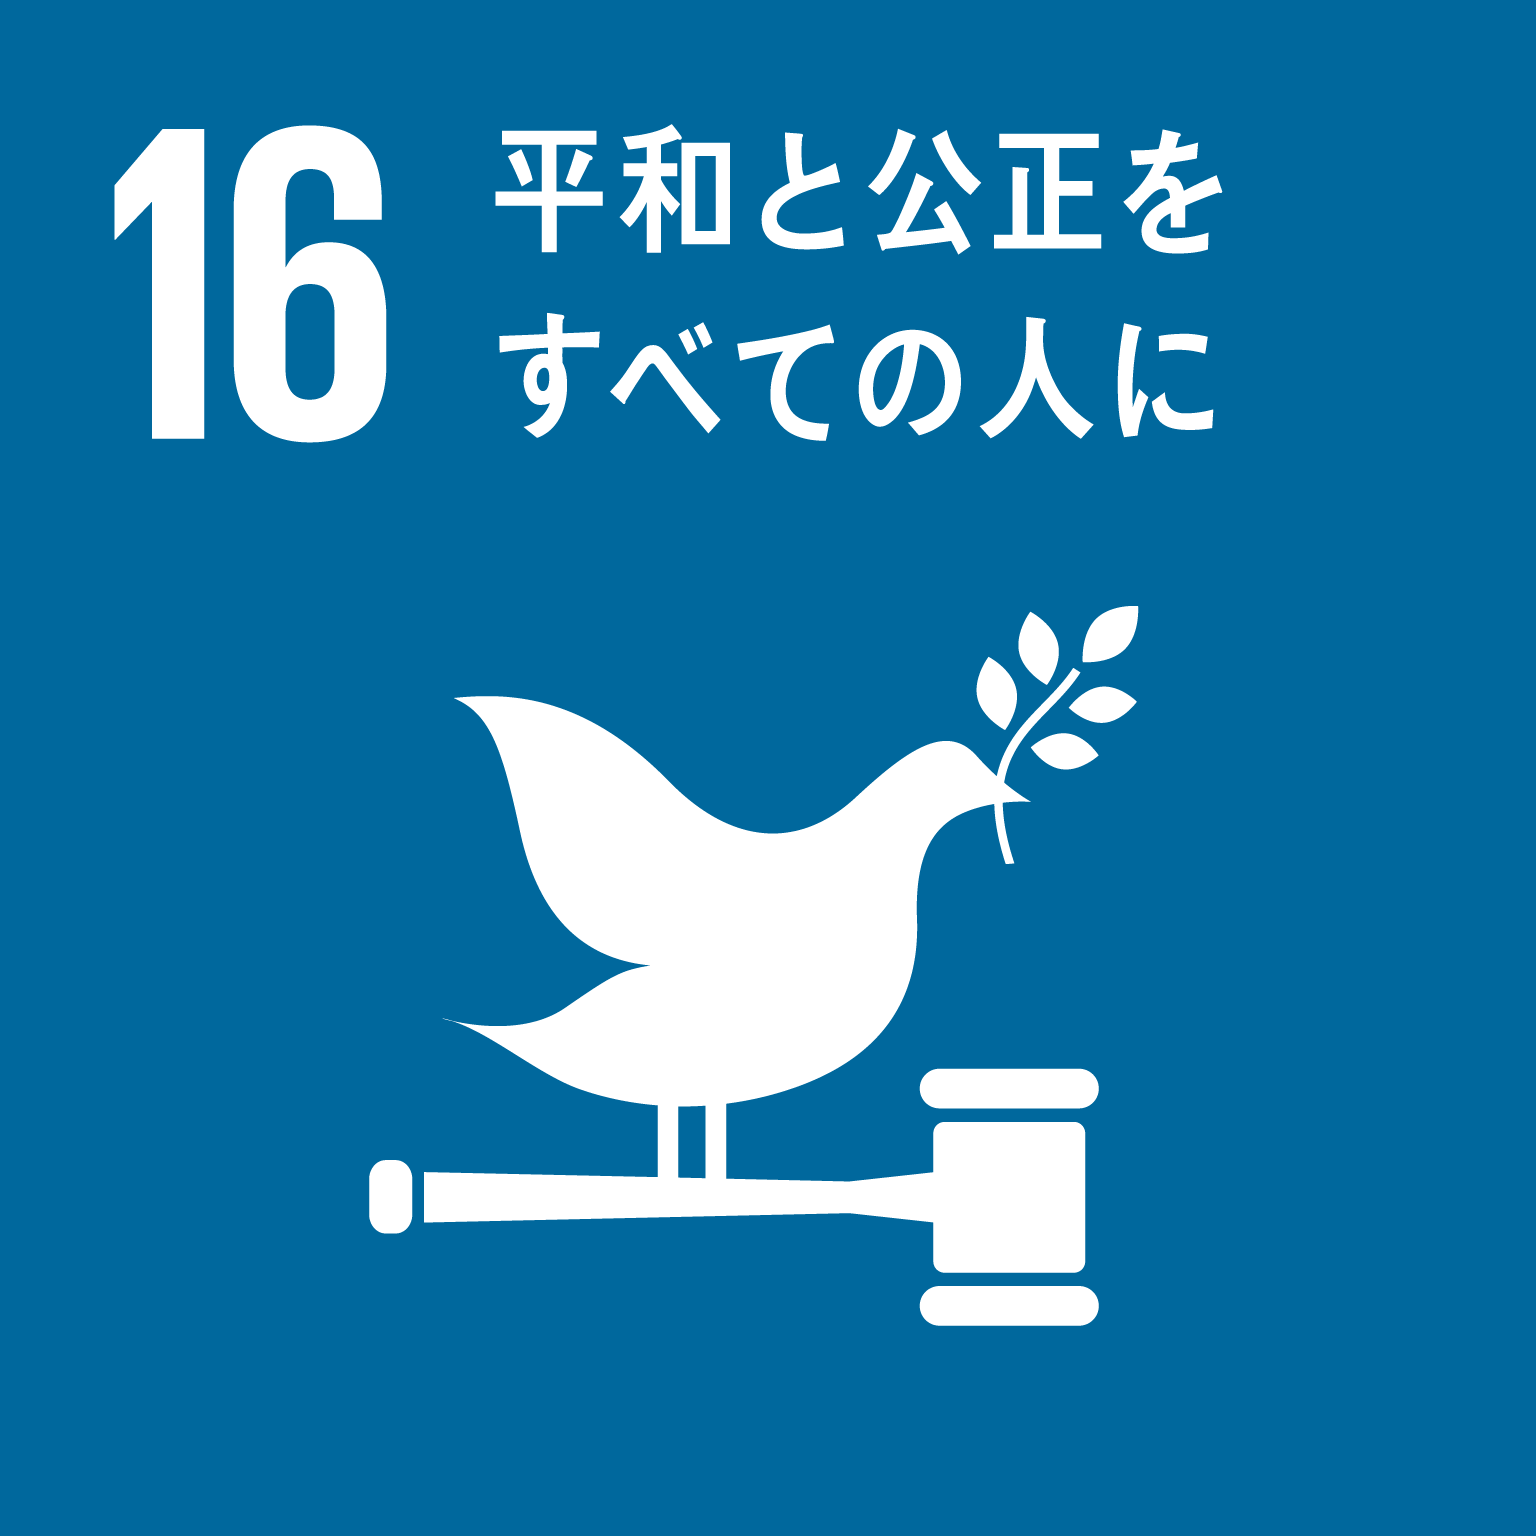 「16.平和と公正をすべての人に」の文字と目標16のロゴ